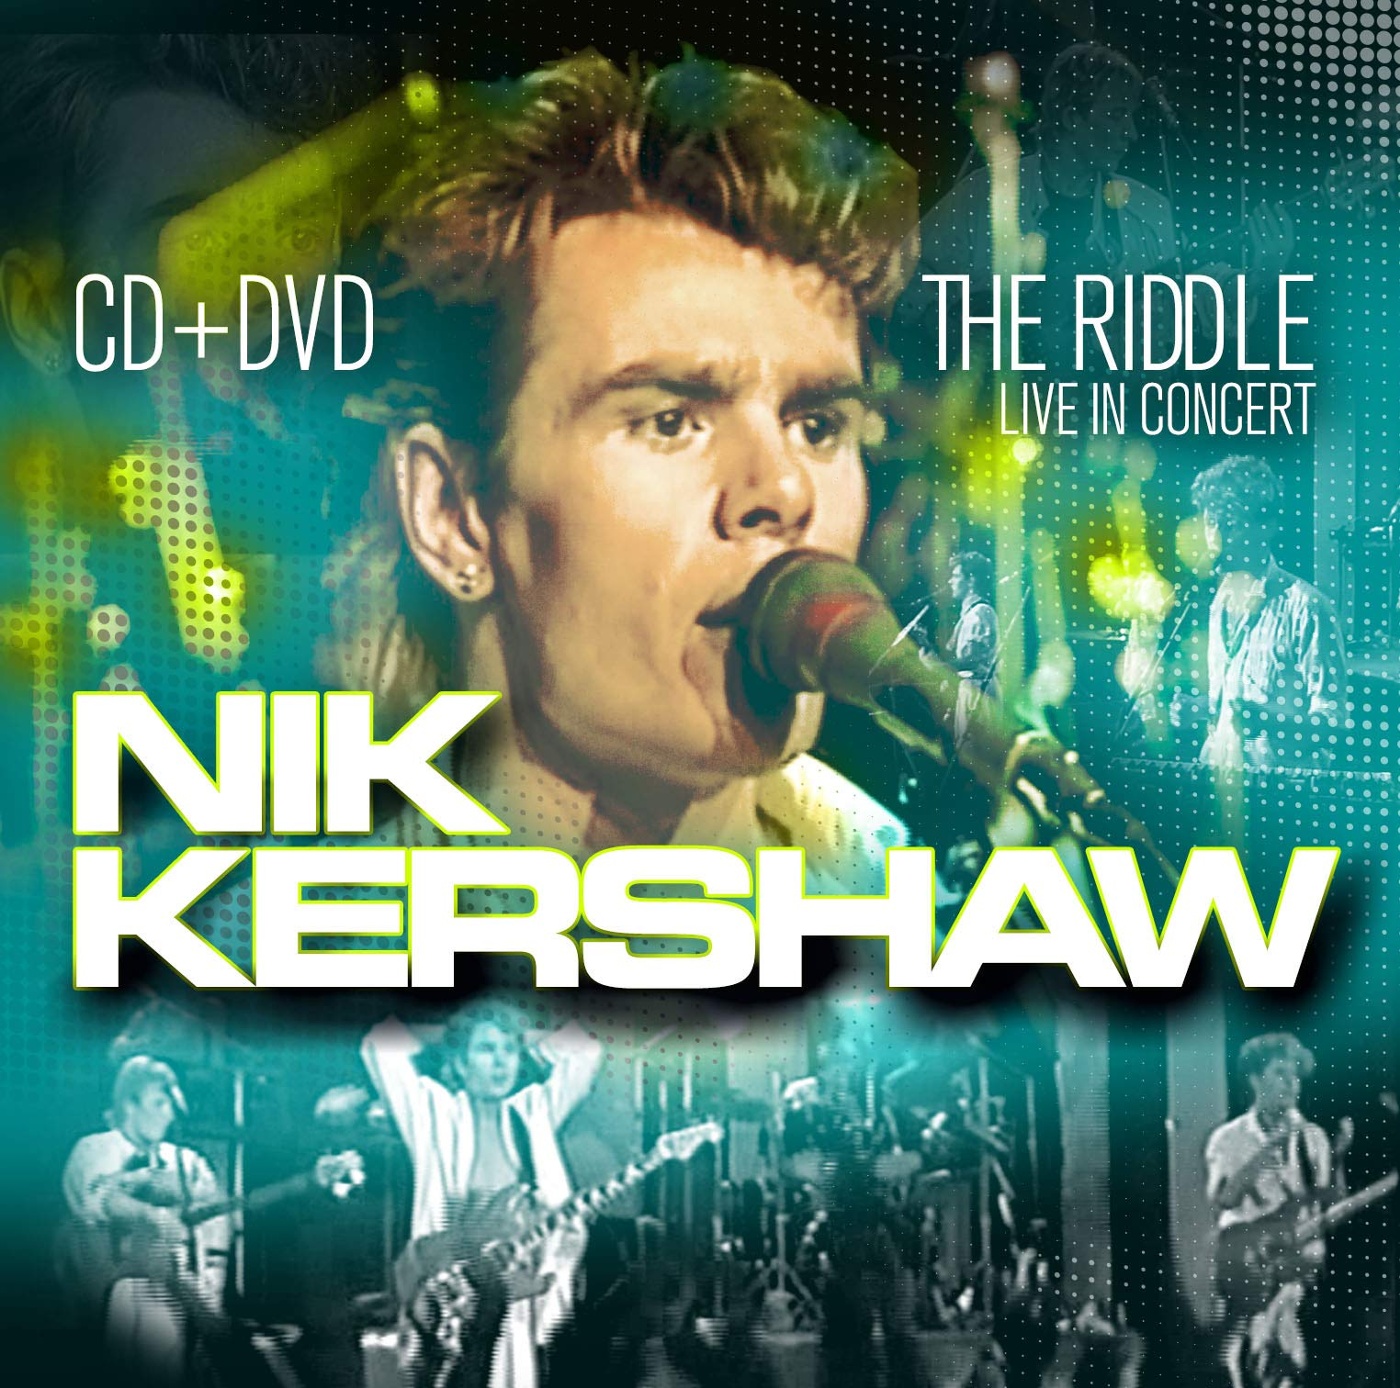 Nik riddle. Nik Kershaw. Ник Кершоу Риддл. Nik Kershaw the Riddle. Nik Kershaw - the Riddle обложка.